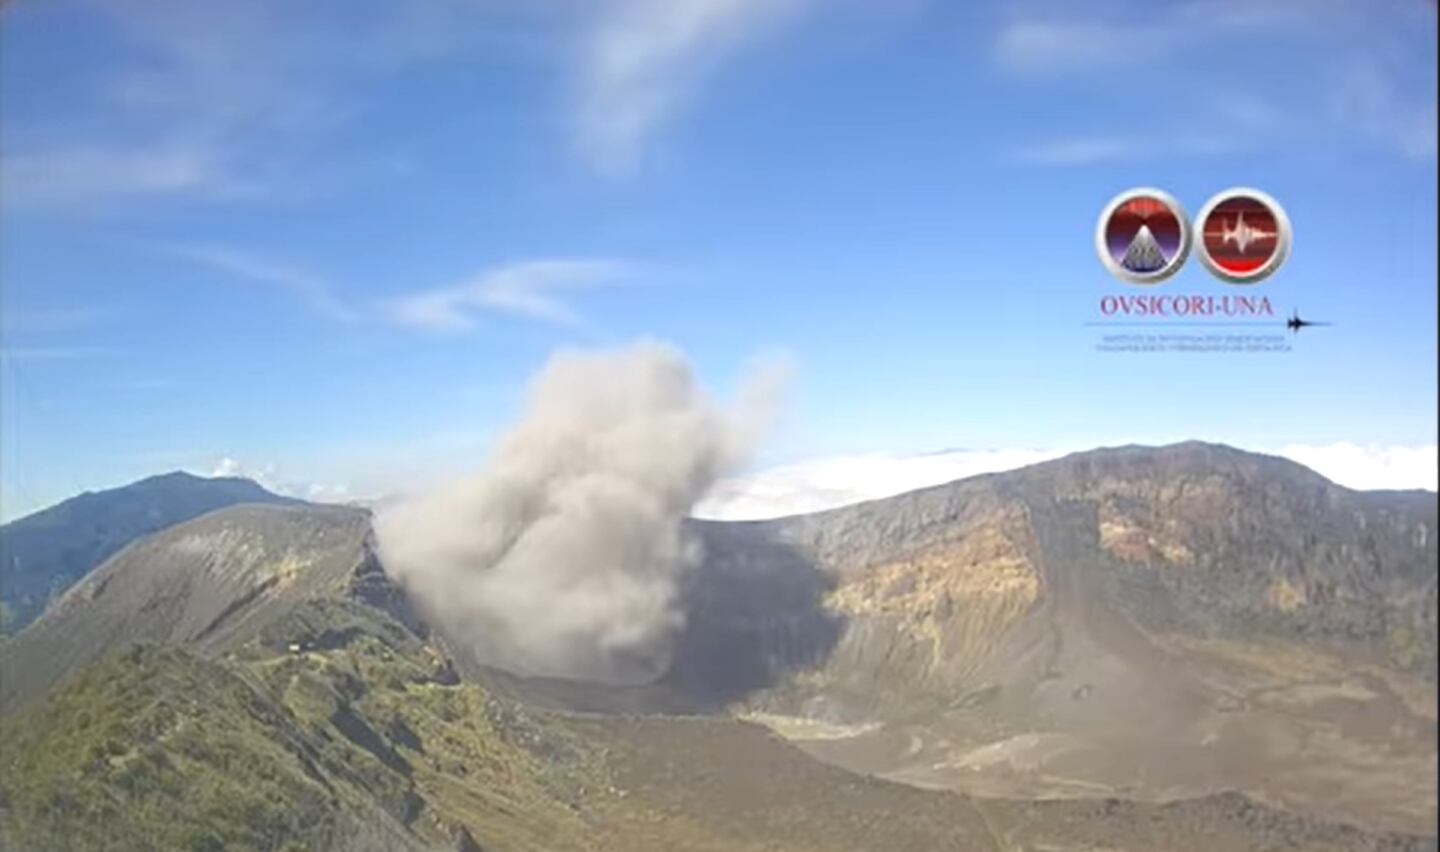 Cierran de forma temporal Parque Nacional Volcán Turrialba por recientes erupciones. Foto Ovsicori.